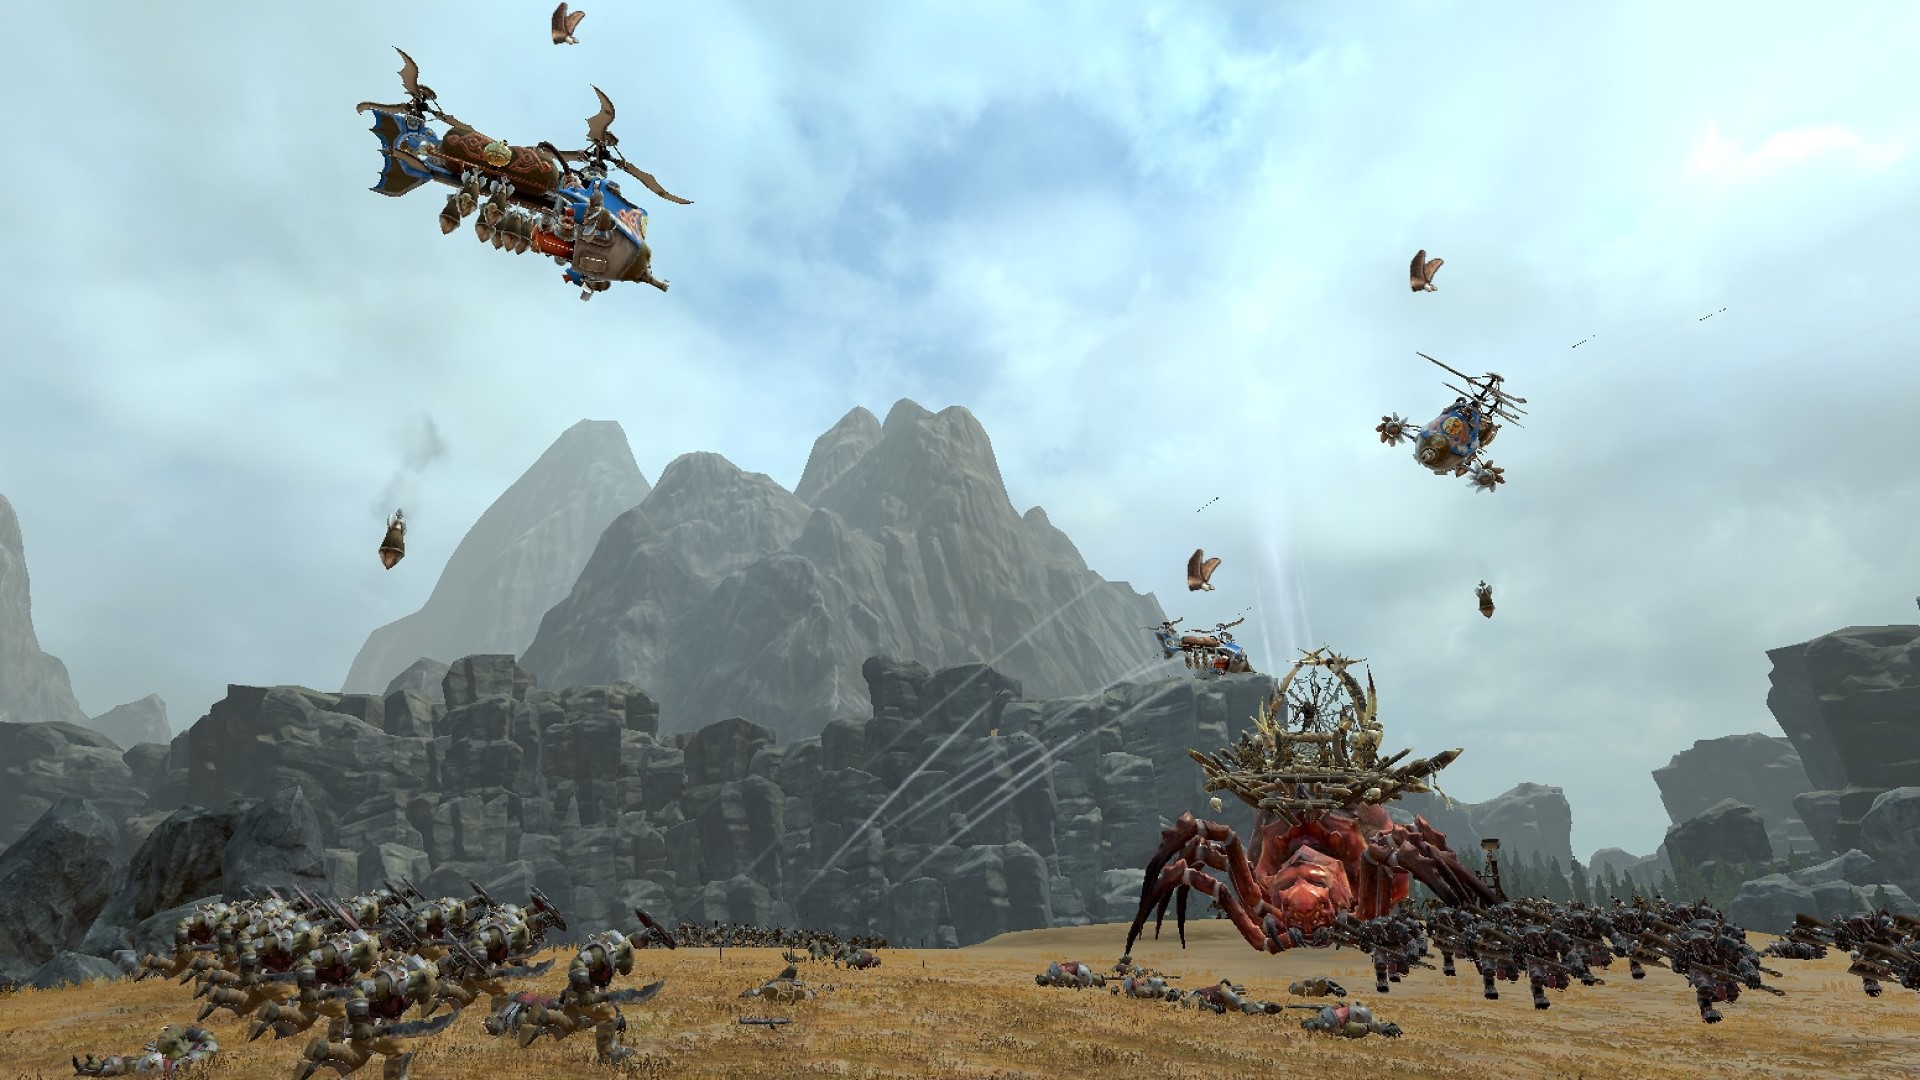 E kāpae i ka micromanaging i kāu Total War: Warhammer 2 aerial units me kēia mod